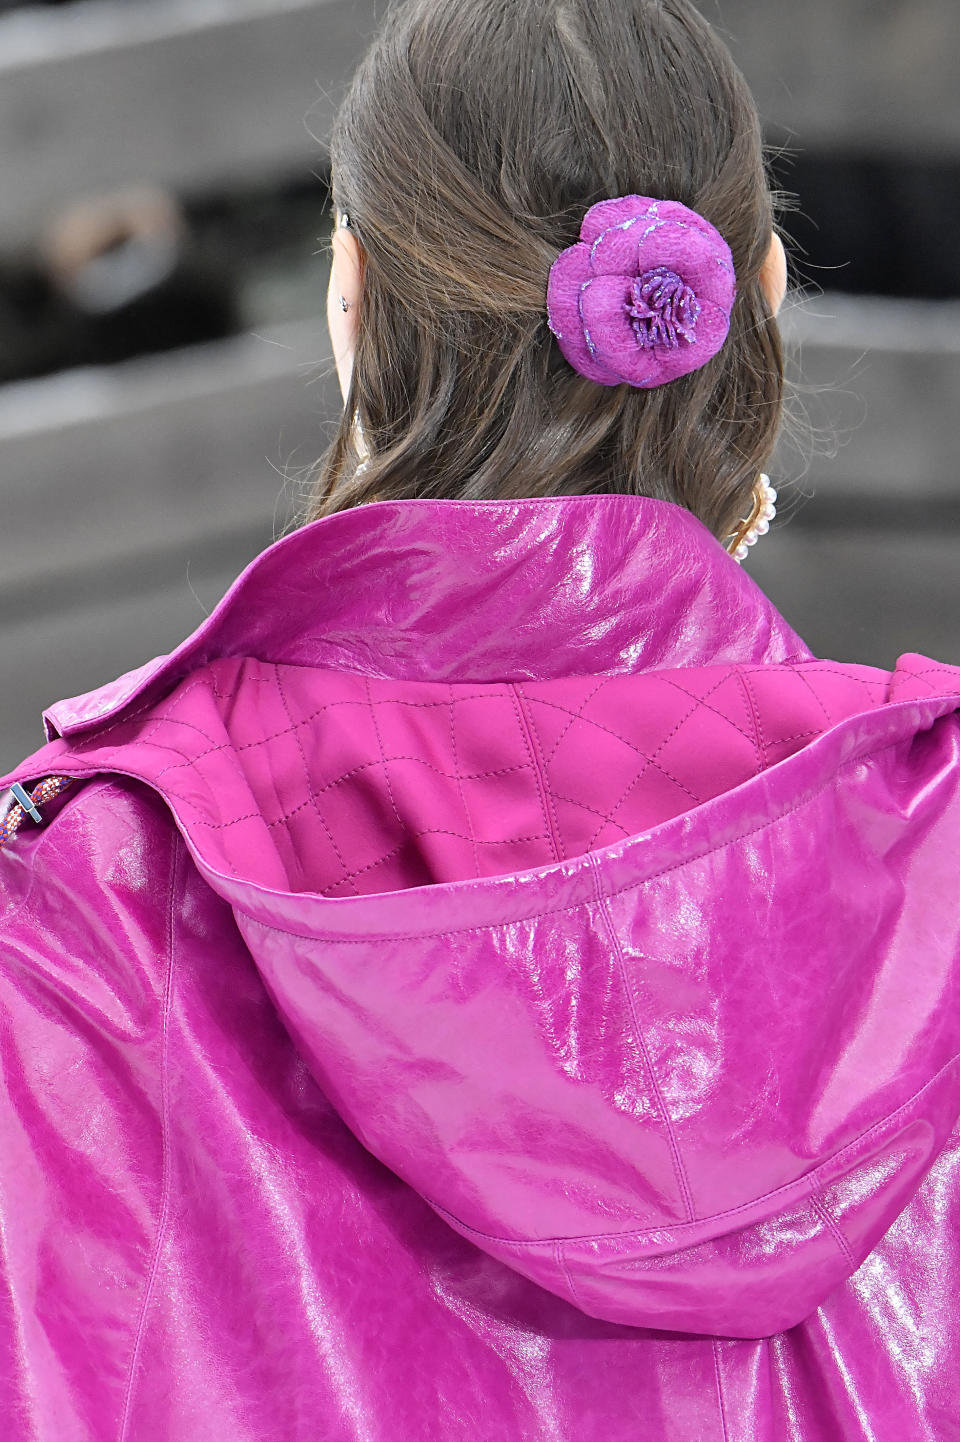 Einige Modelle hatten auch florale Elemente in den Achtziger-Farben Pink und Türkis im Haar. (Bild: Getty Images)